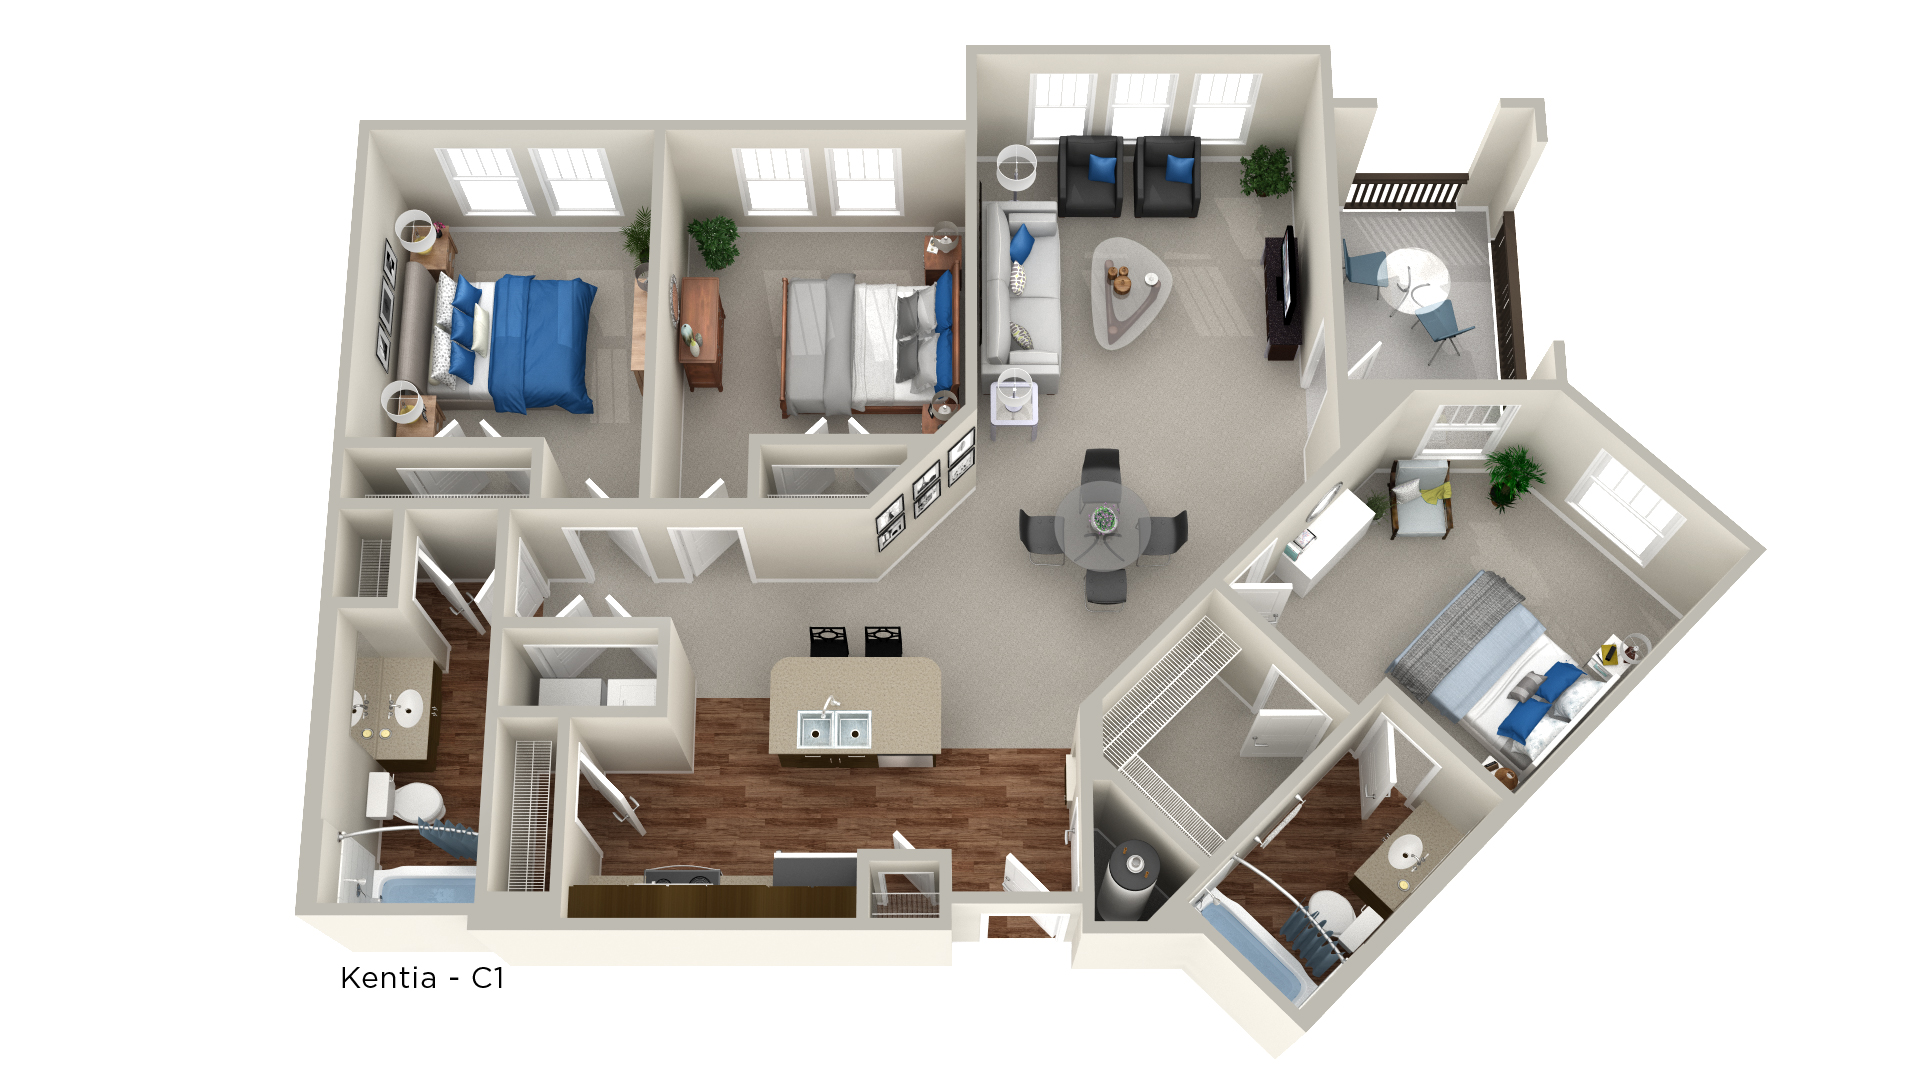 Whitepalm Luxury Apartment Homes - Floorplan - Kentia